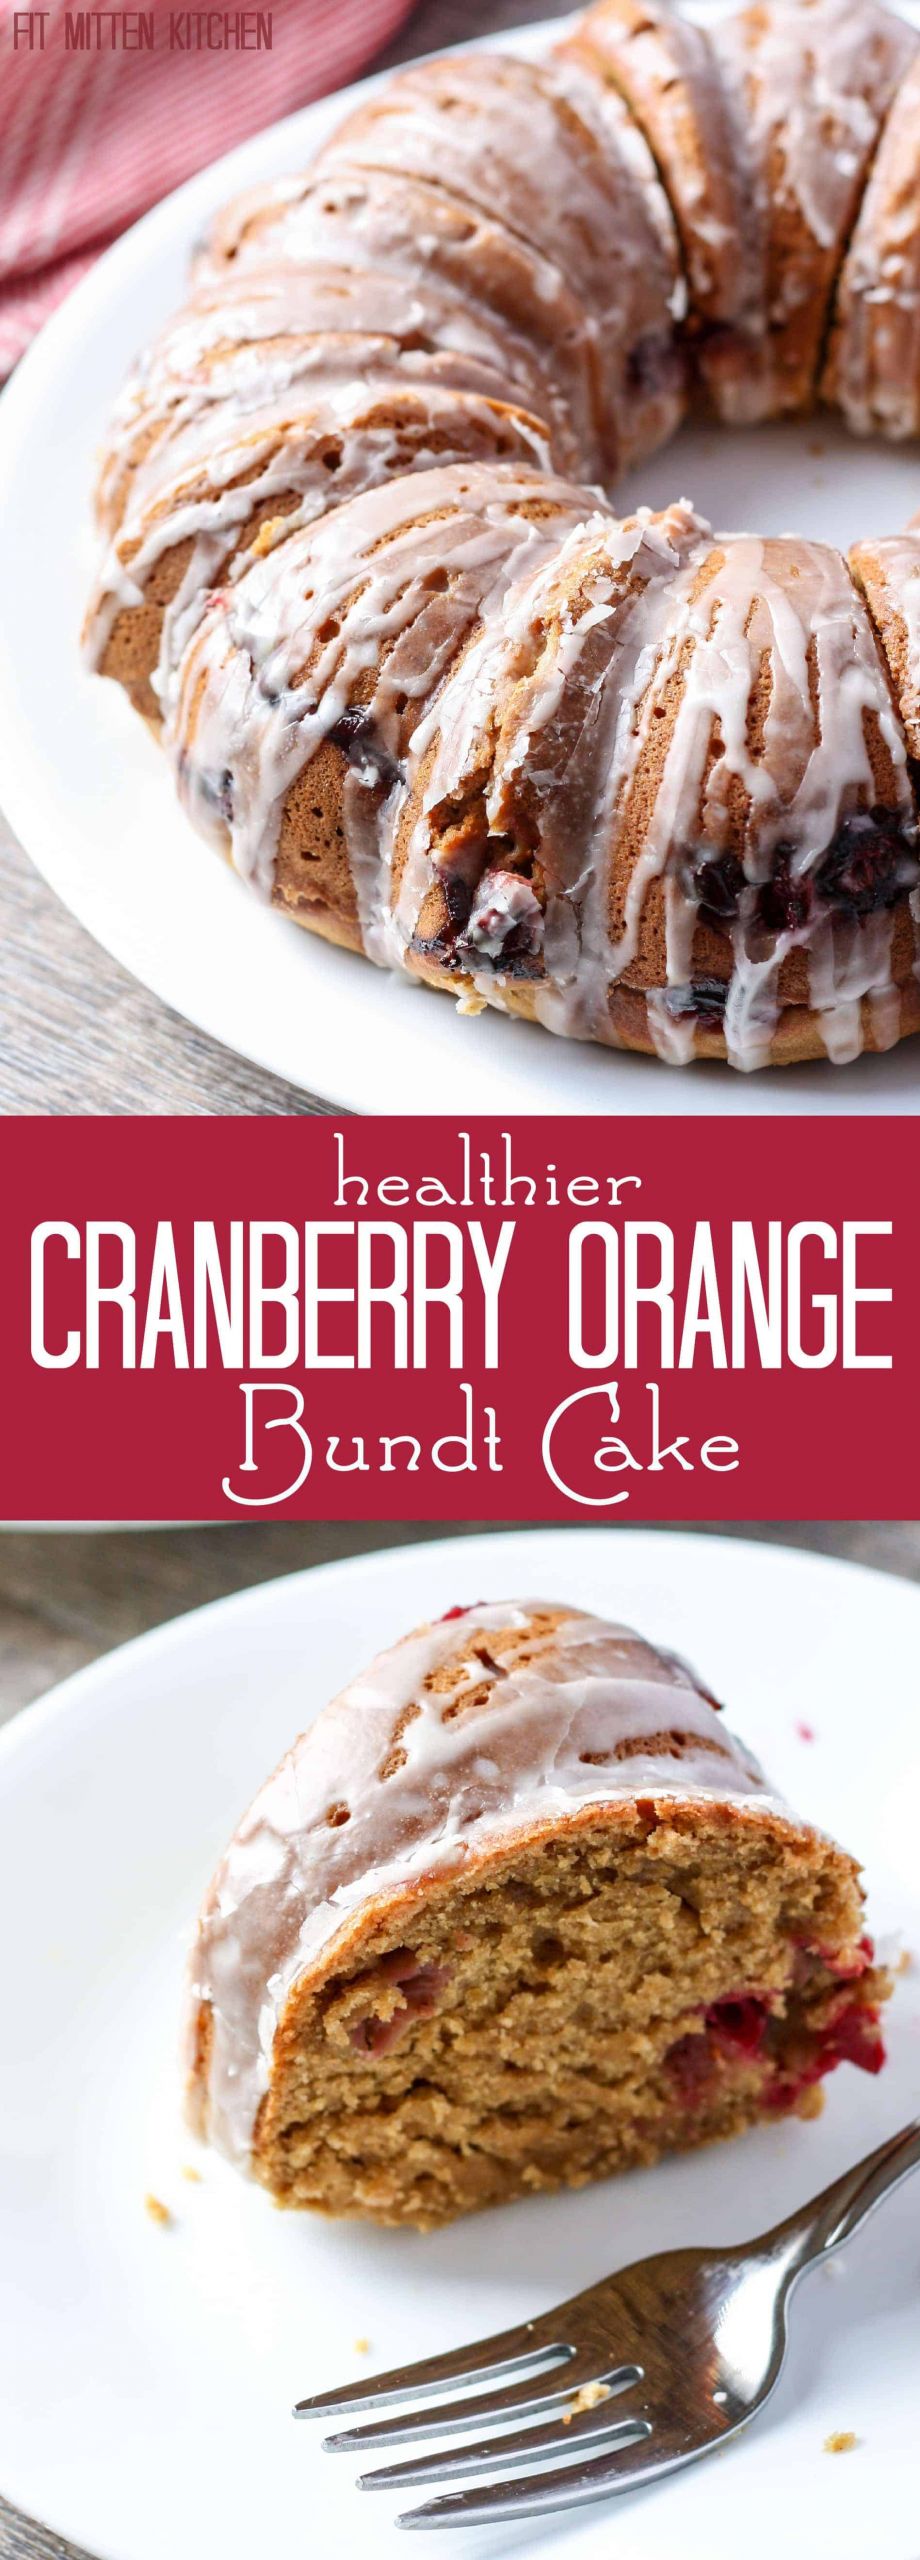 Cranberry Orange Bundt Cake
 Healthier Cranberry Orange Bundt Cake • Fit Mitten Kitchen